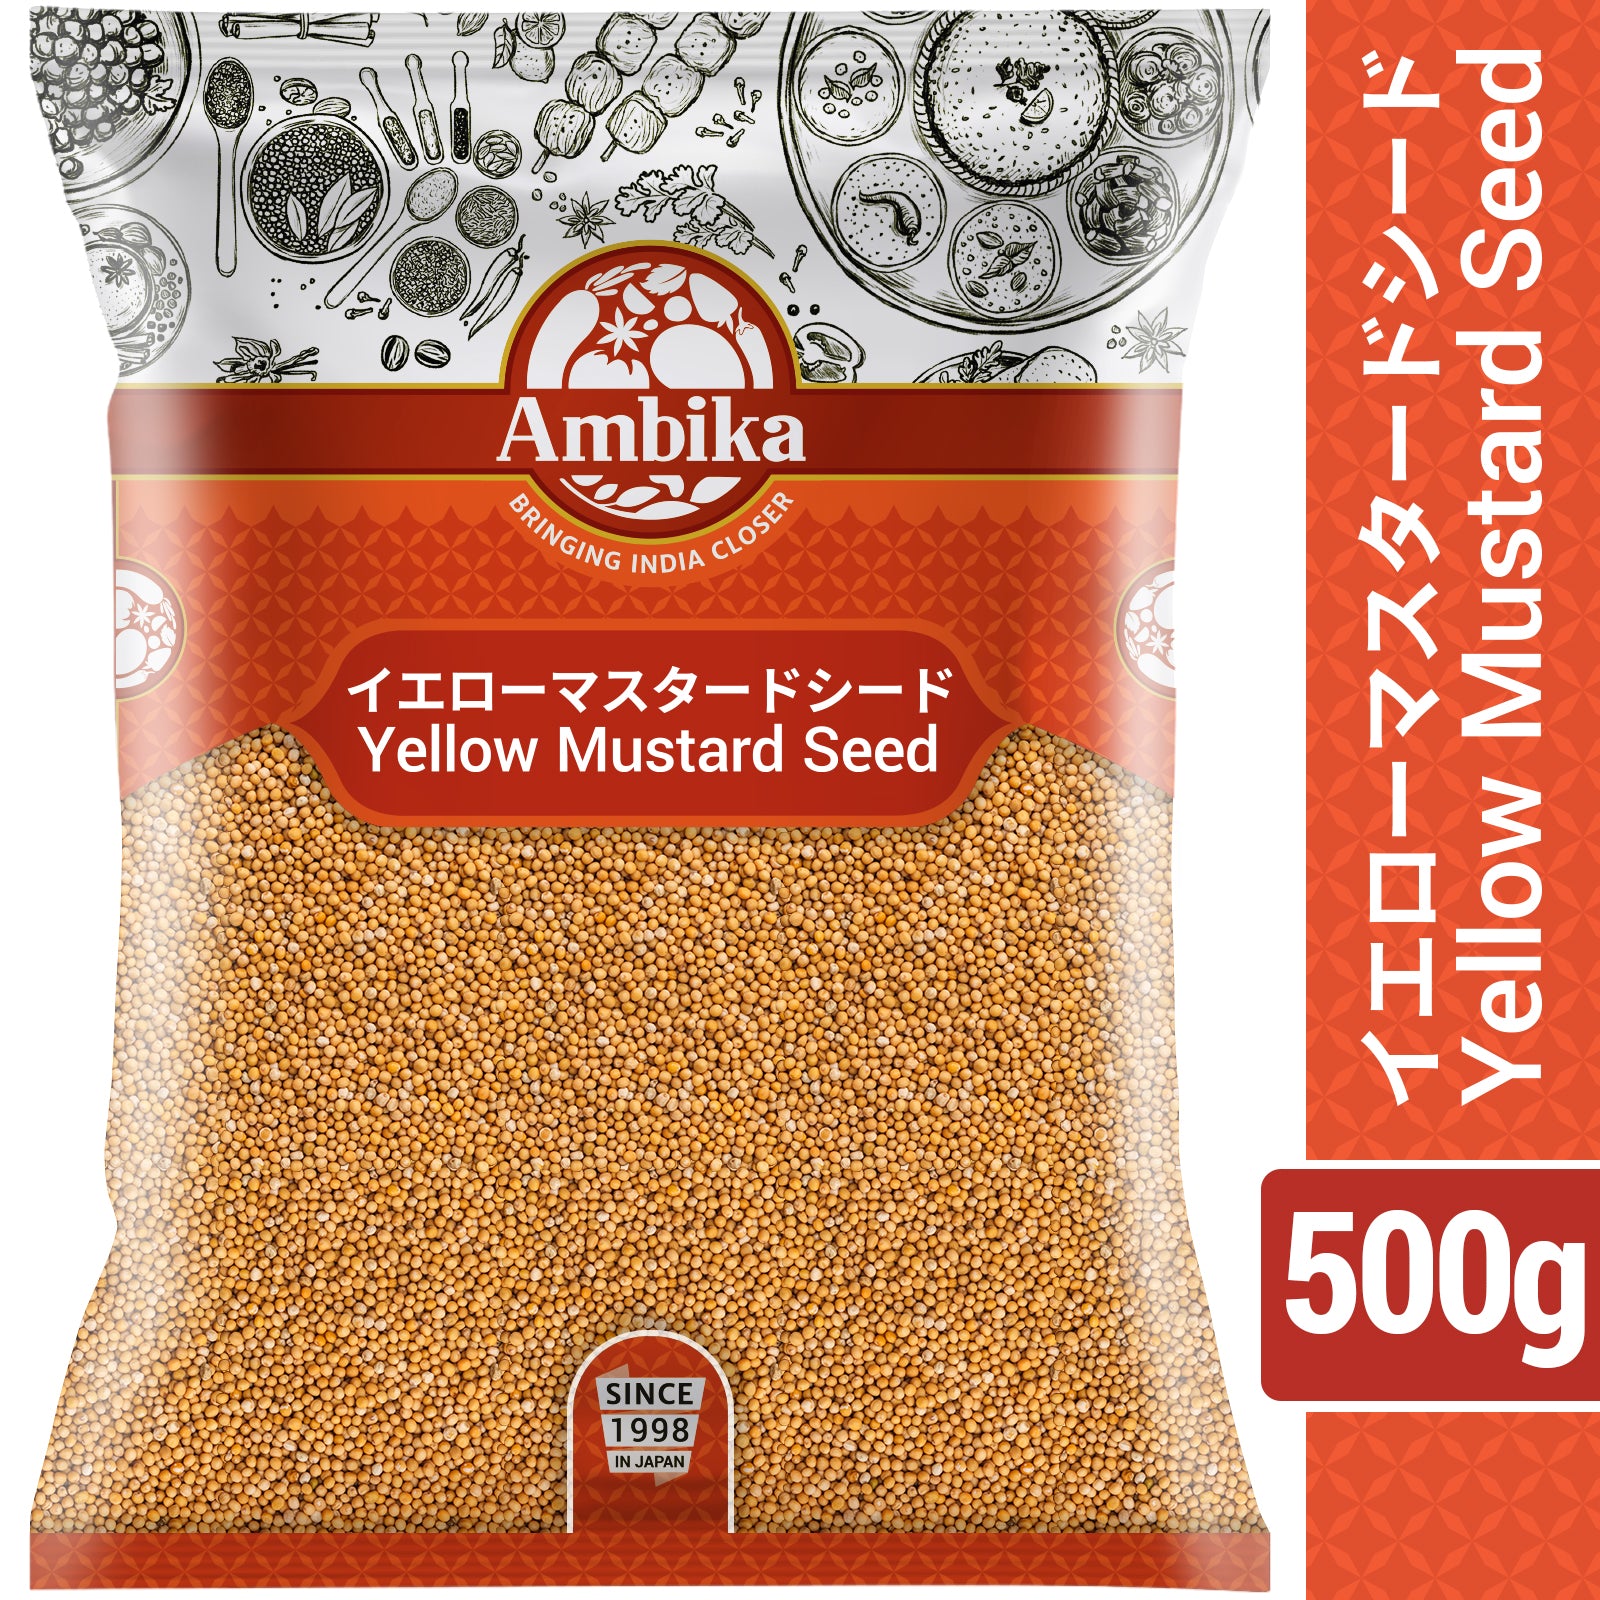 Ambika Yellow Mustard Seed 500g